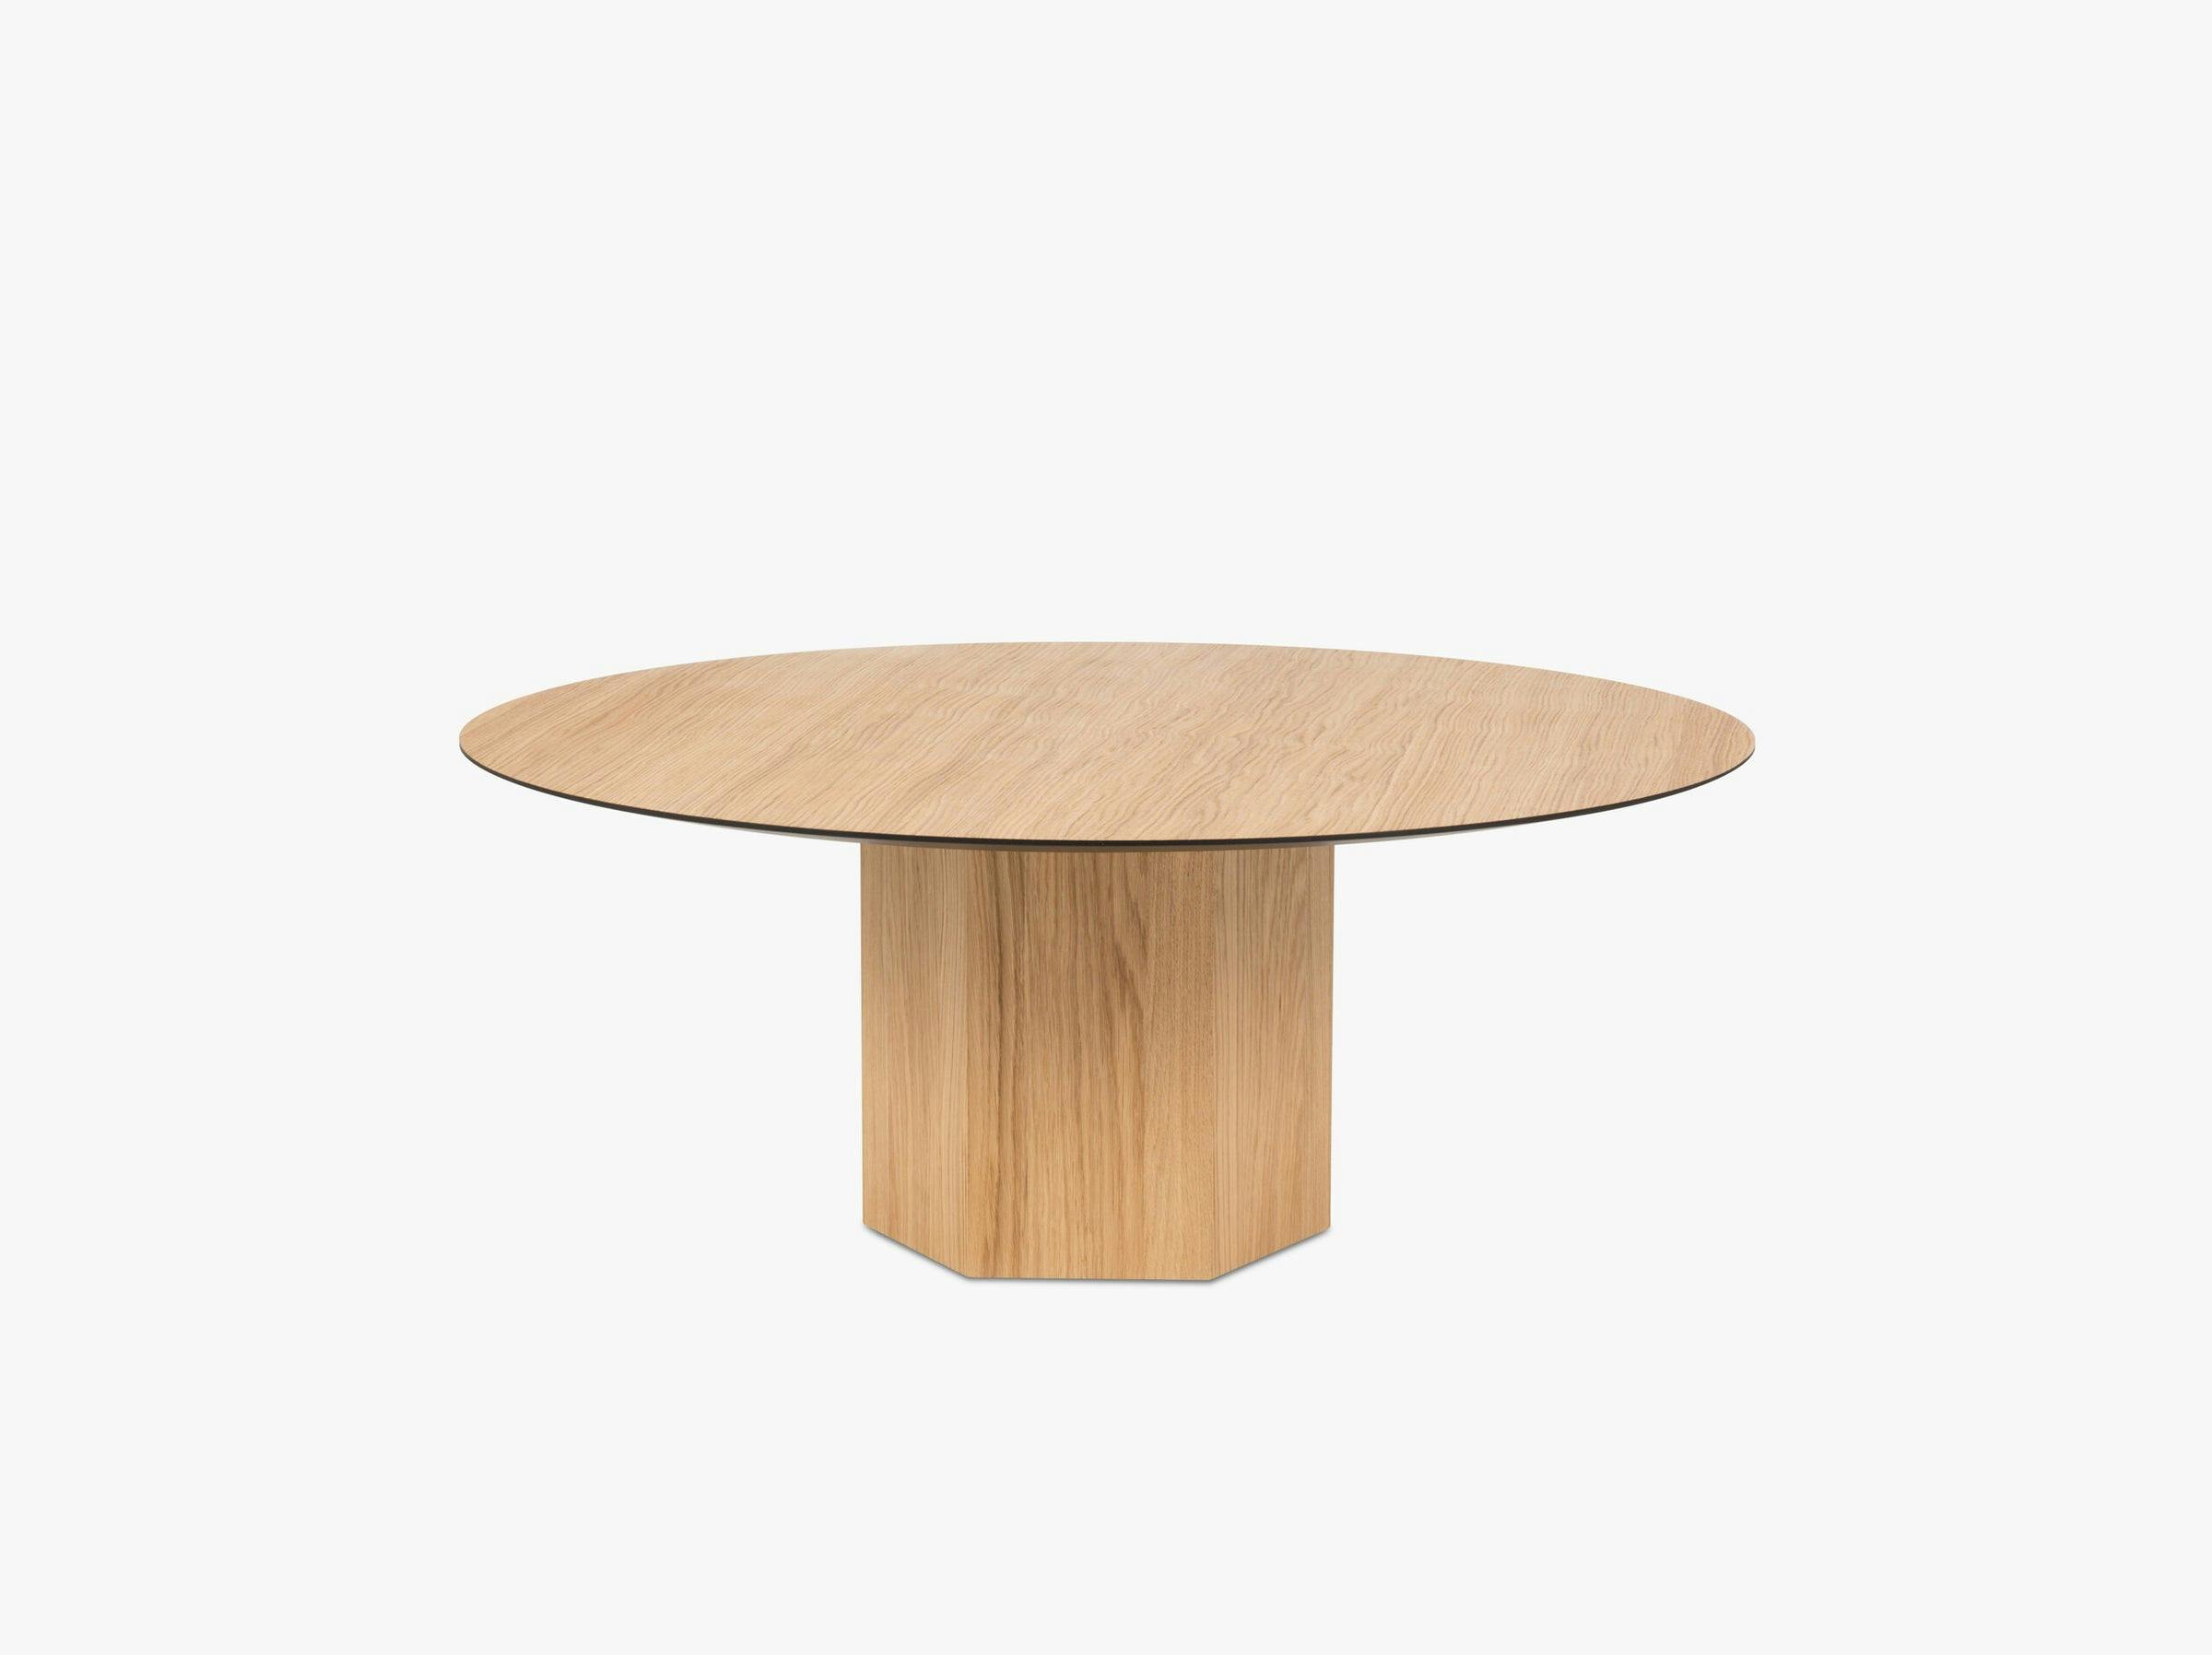 Sahara tables & chairs wood natural oak veneer